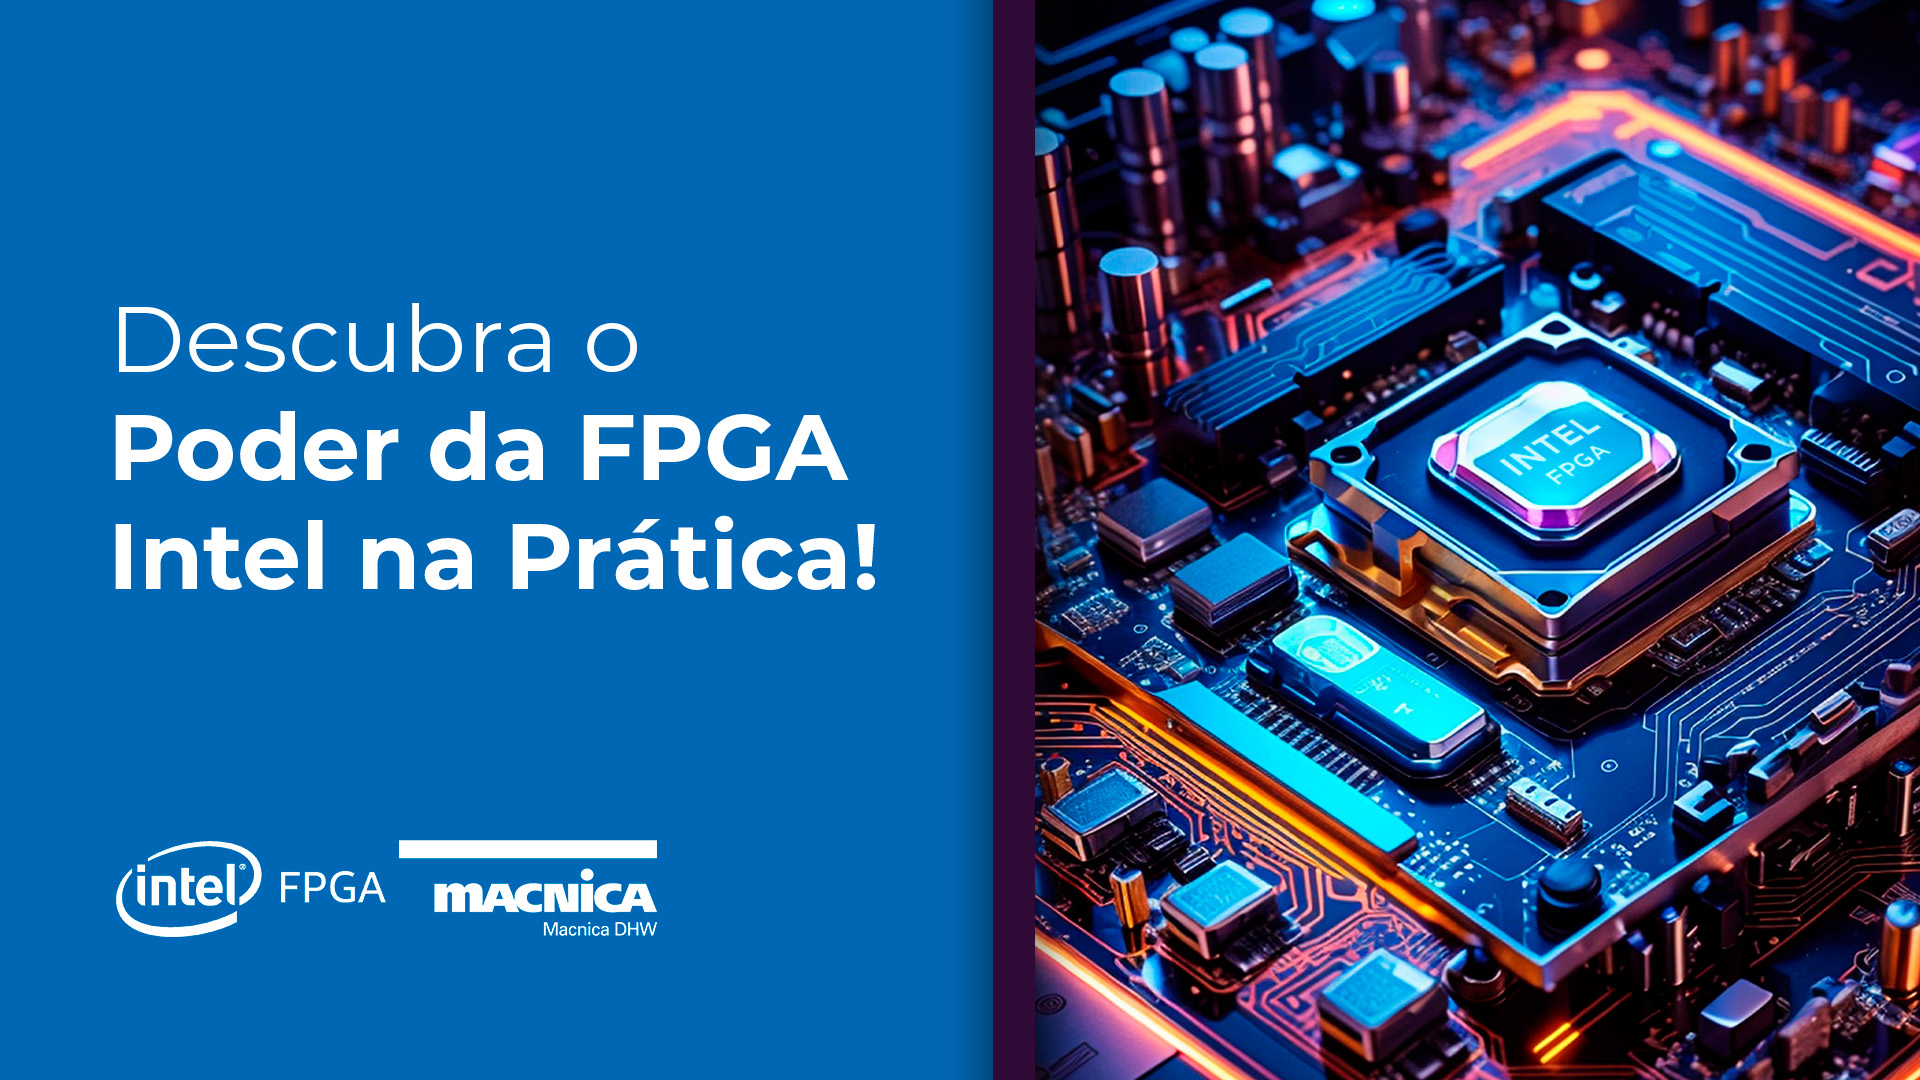 Descubra o Poder da FPGA Intel na Prática!